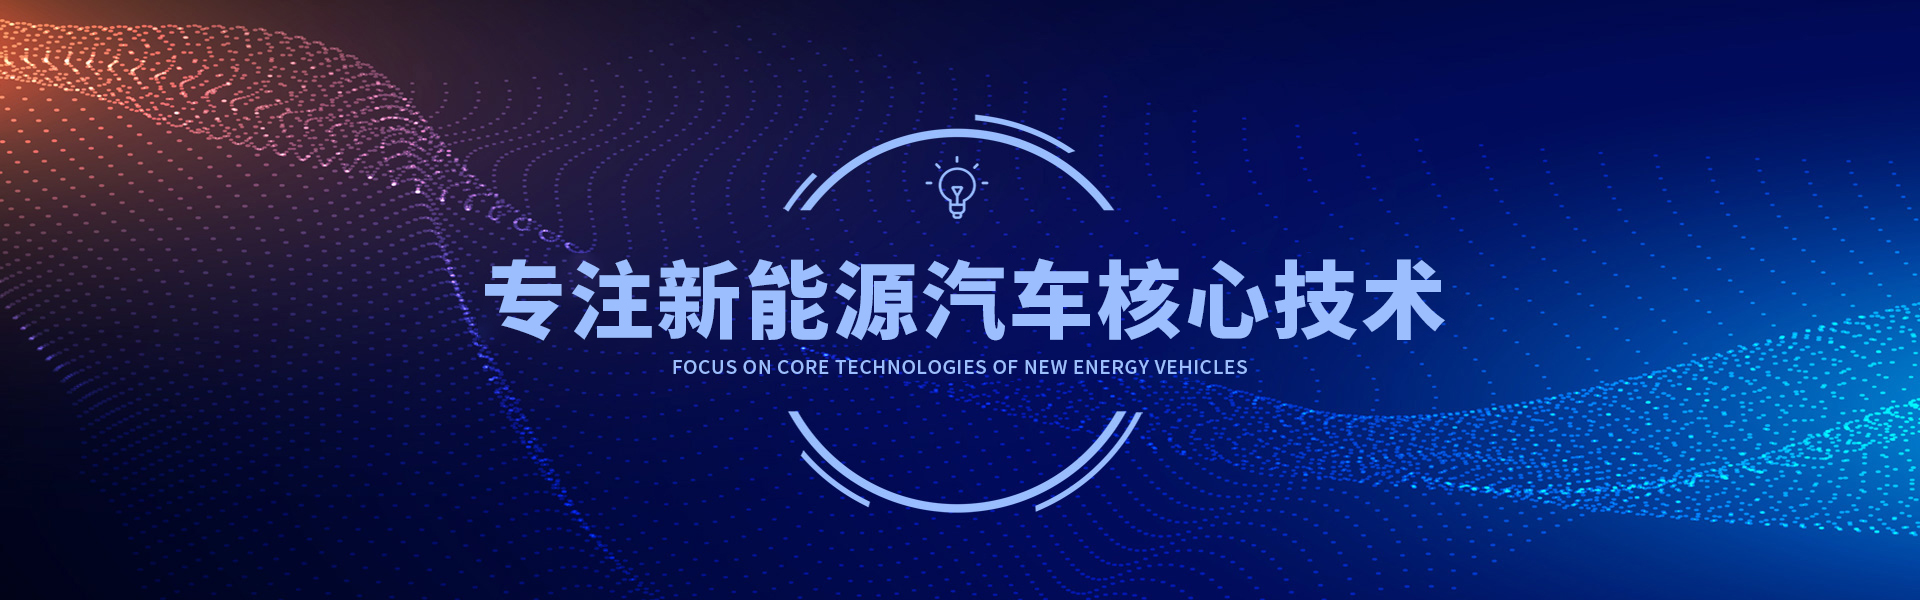 环球体育(中国)官方网站神州专注新能源汽车核心技术11年